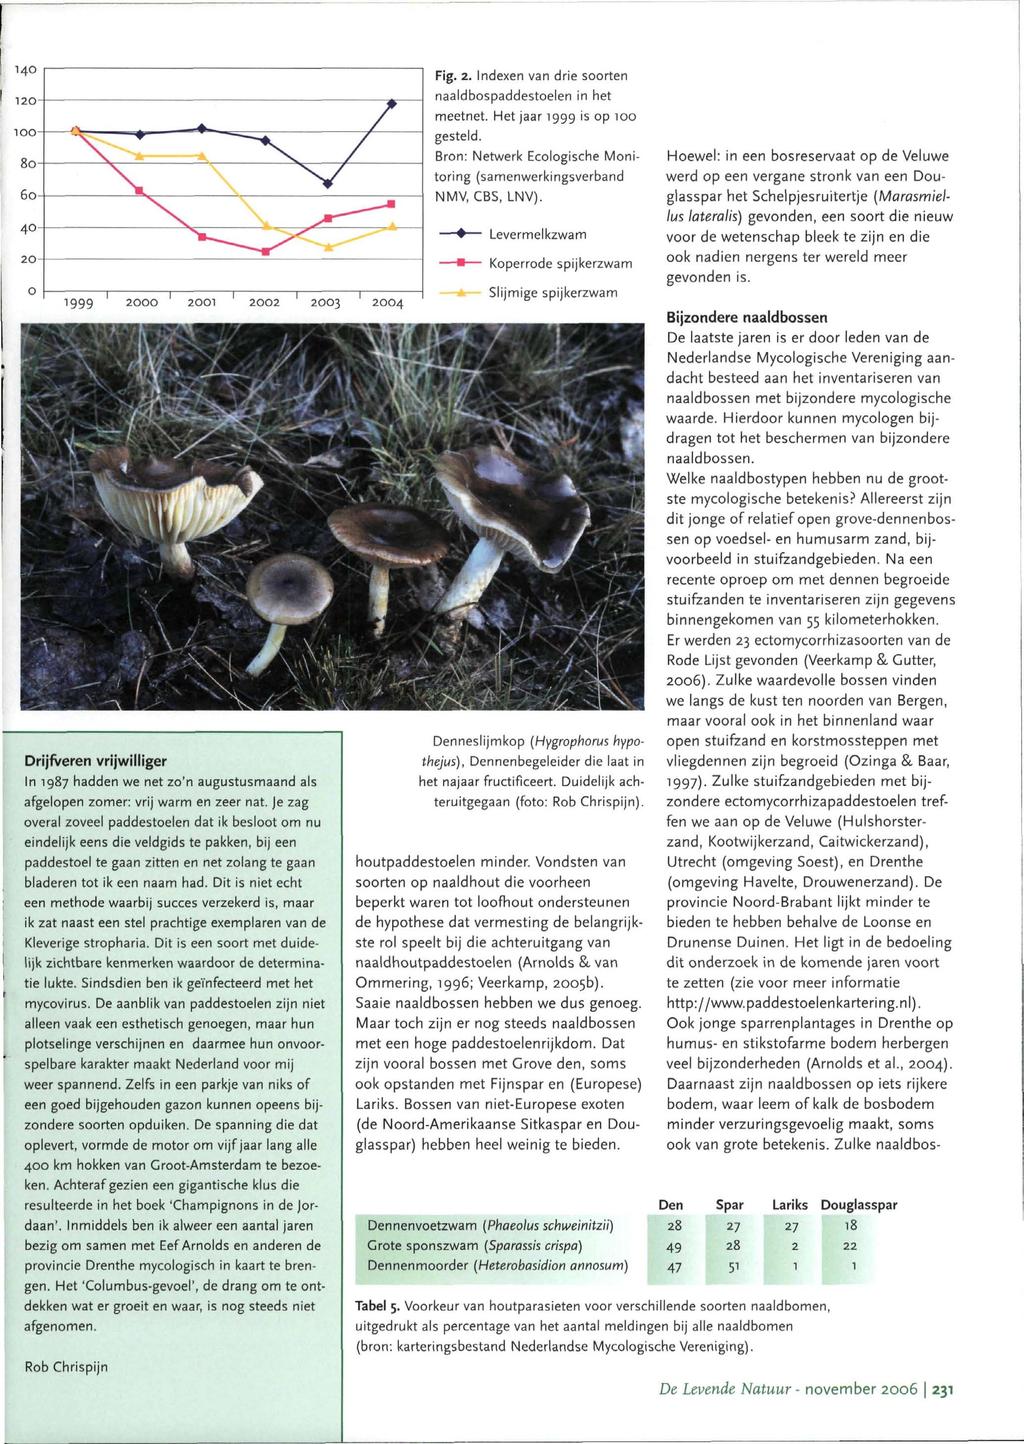 Fig. 2. Indexen van drie soorten naaldbospaddestoelen in het meetnet. Het jaar 99 is op 100 gesteld. Bron: Netwerk Ecologische Monitoring (samenwerkingsverband NMV, CBS, LNV).